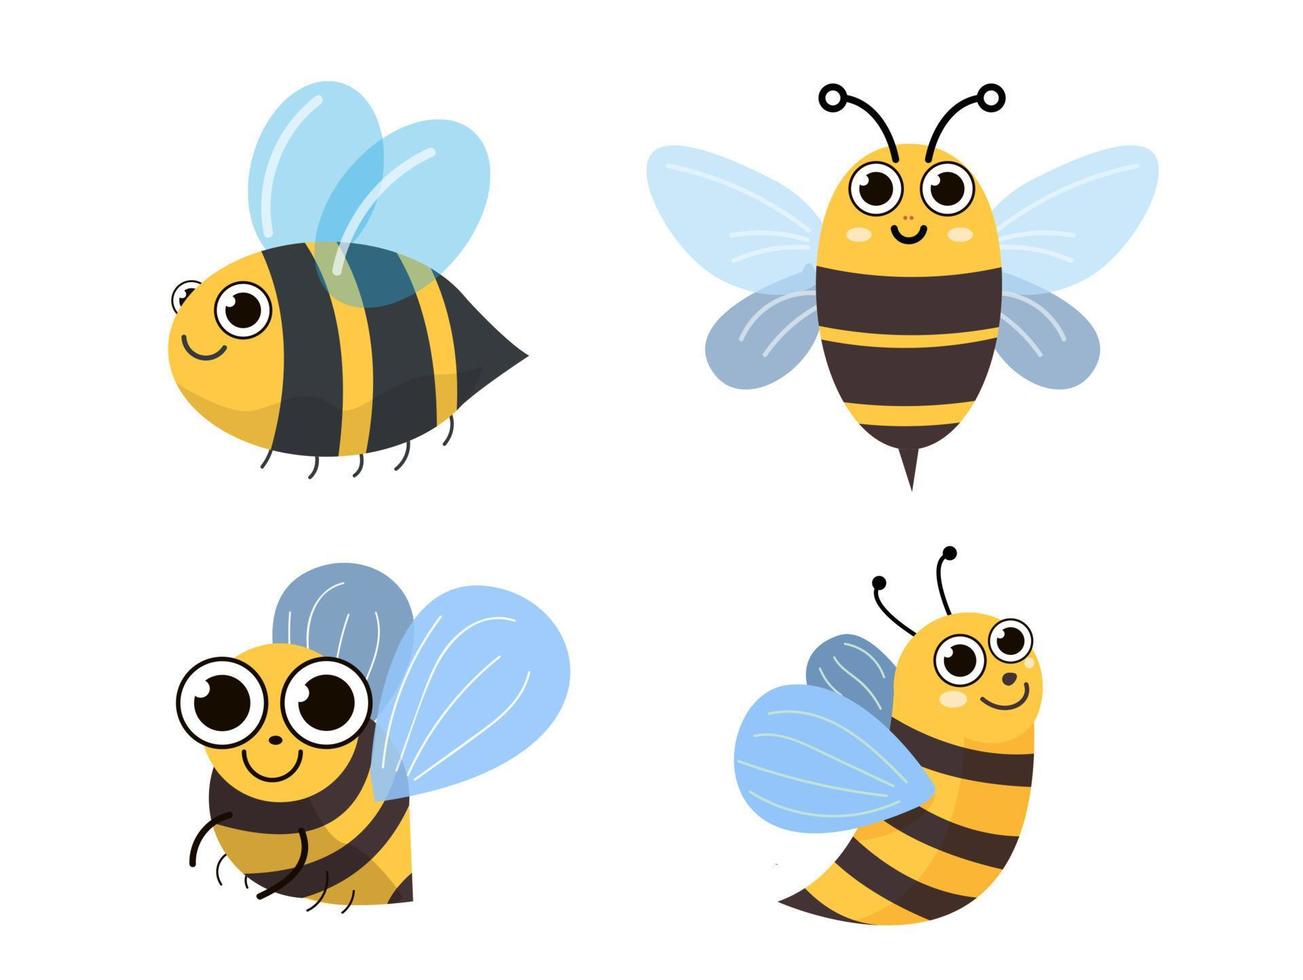 söt rolig bikaraktär. platt illustration av honung element för webbdesign vektor illustratör